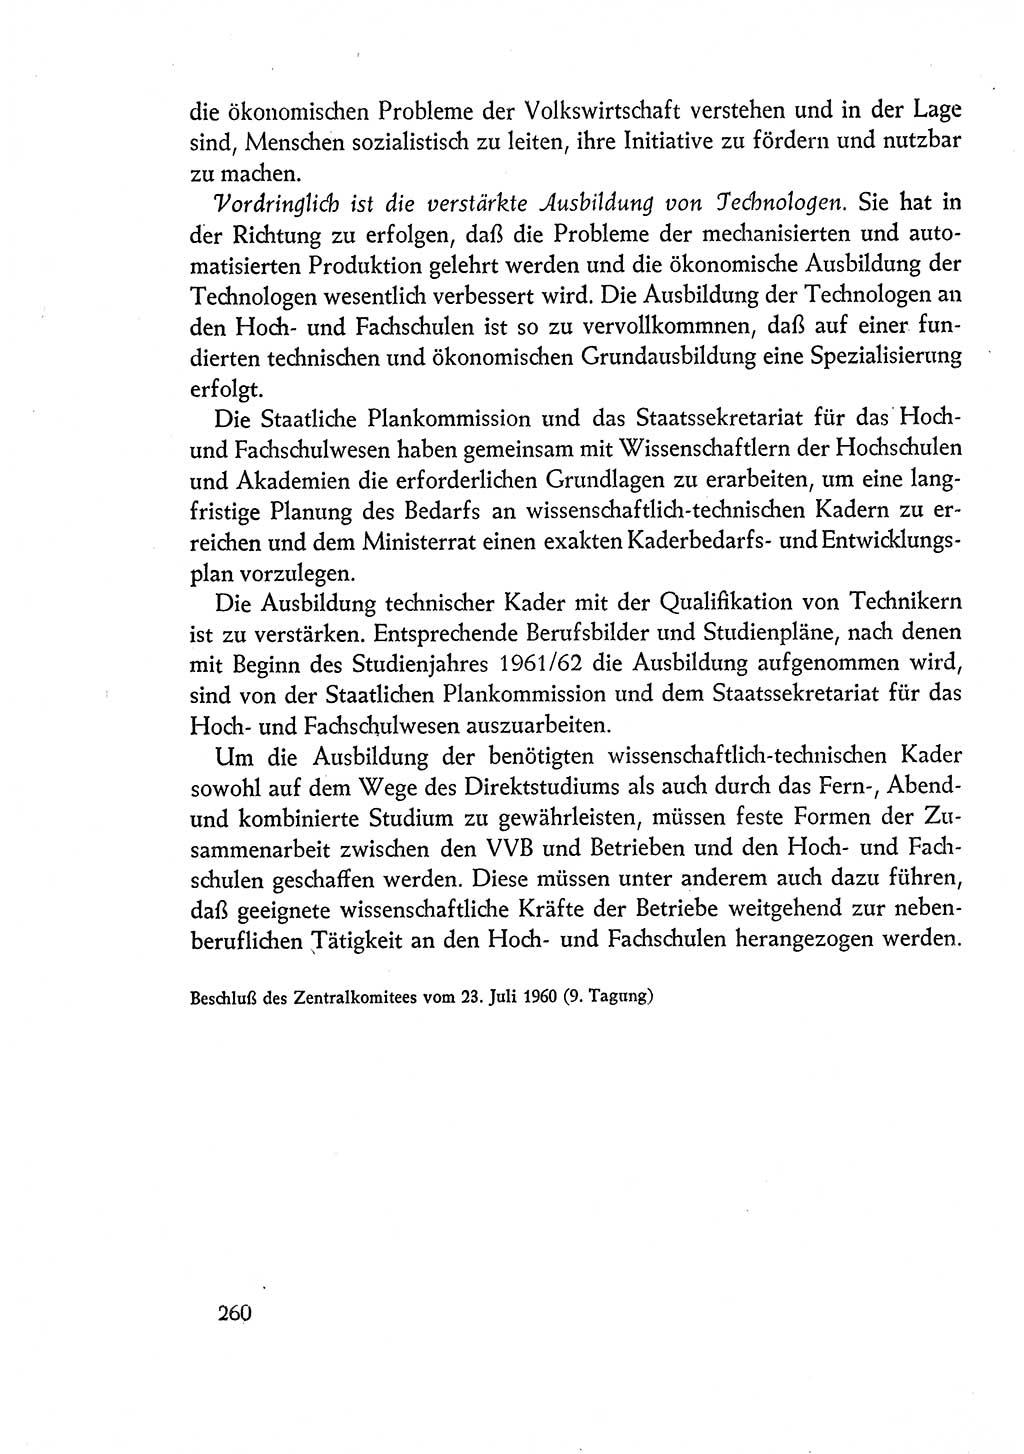 Dokumente der Sozialistischen Einheitspartei Deutschlands (SED) [Deutsche Demokratische Republik (DDR)] 1960-1961, Seite 260 (Dok. SED DDR 1960-1961, S. 260)